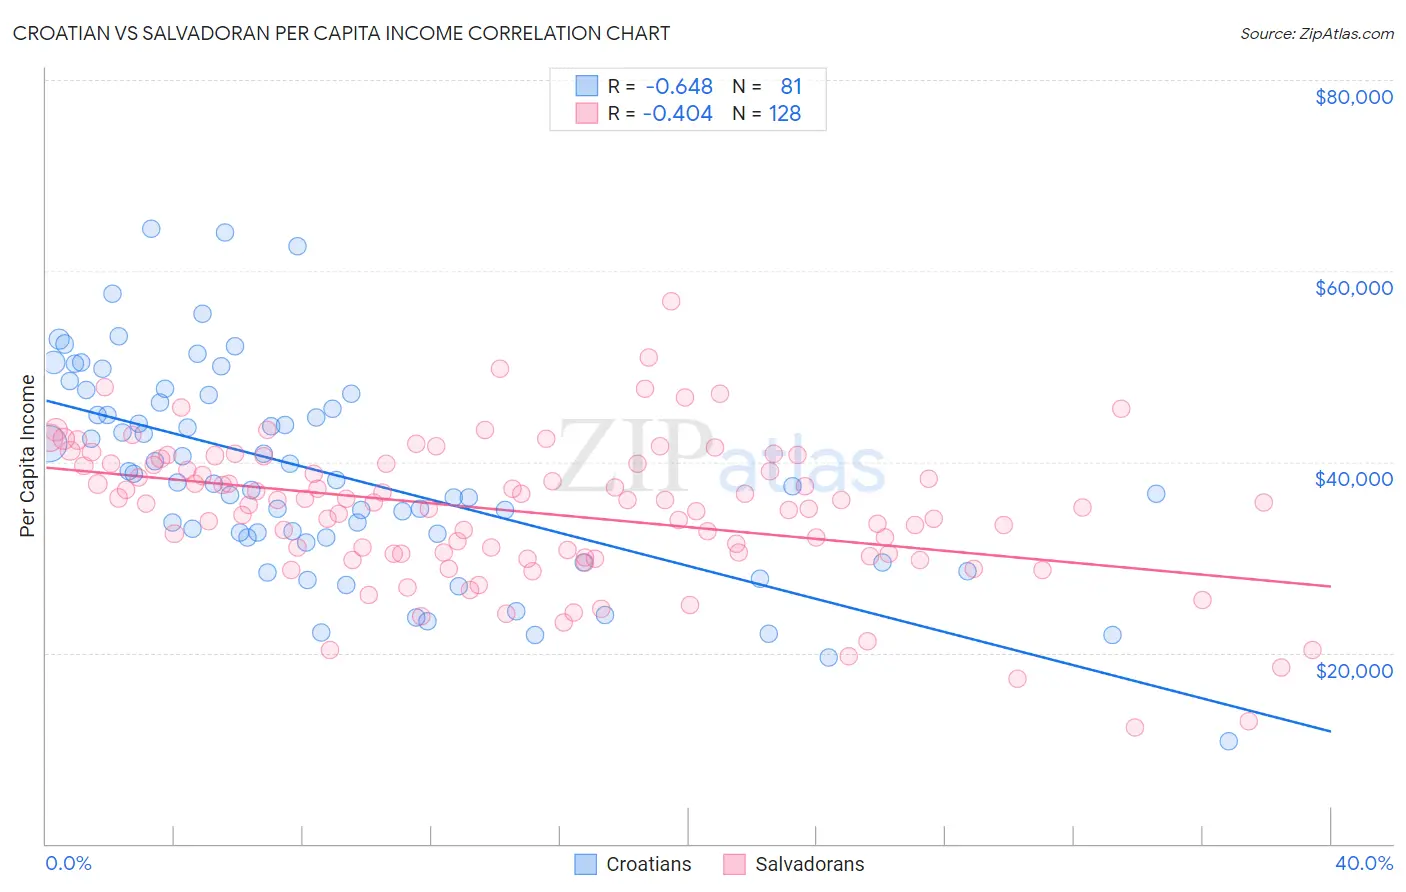 Croatian vs Salvadoran Per Capita Income